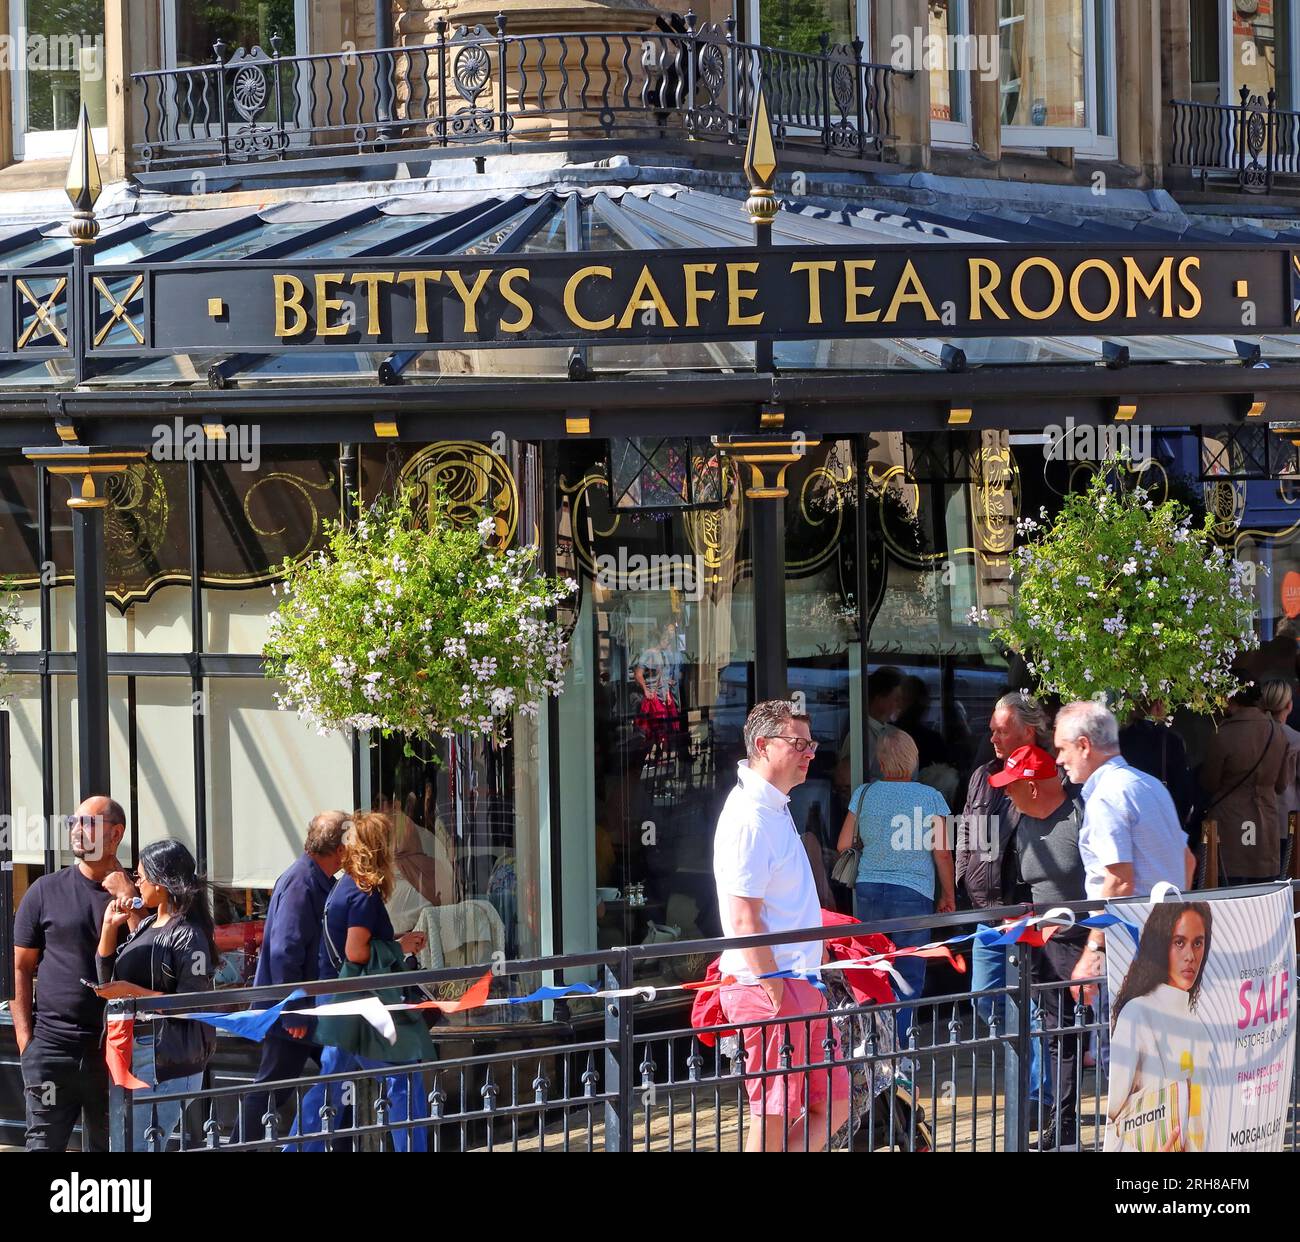 Bettys Cafe Tea Rooms café et boutique, Montpellier Parade / 1 Parliament St, Harrogate, North Yorkshire, Angleterre, Royaume-Uni , HG1 2QU Banque D'Images